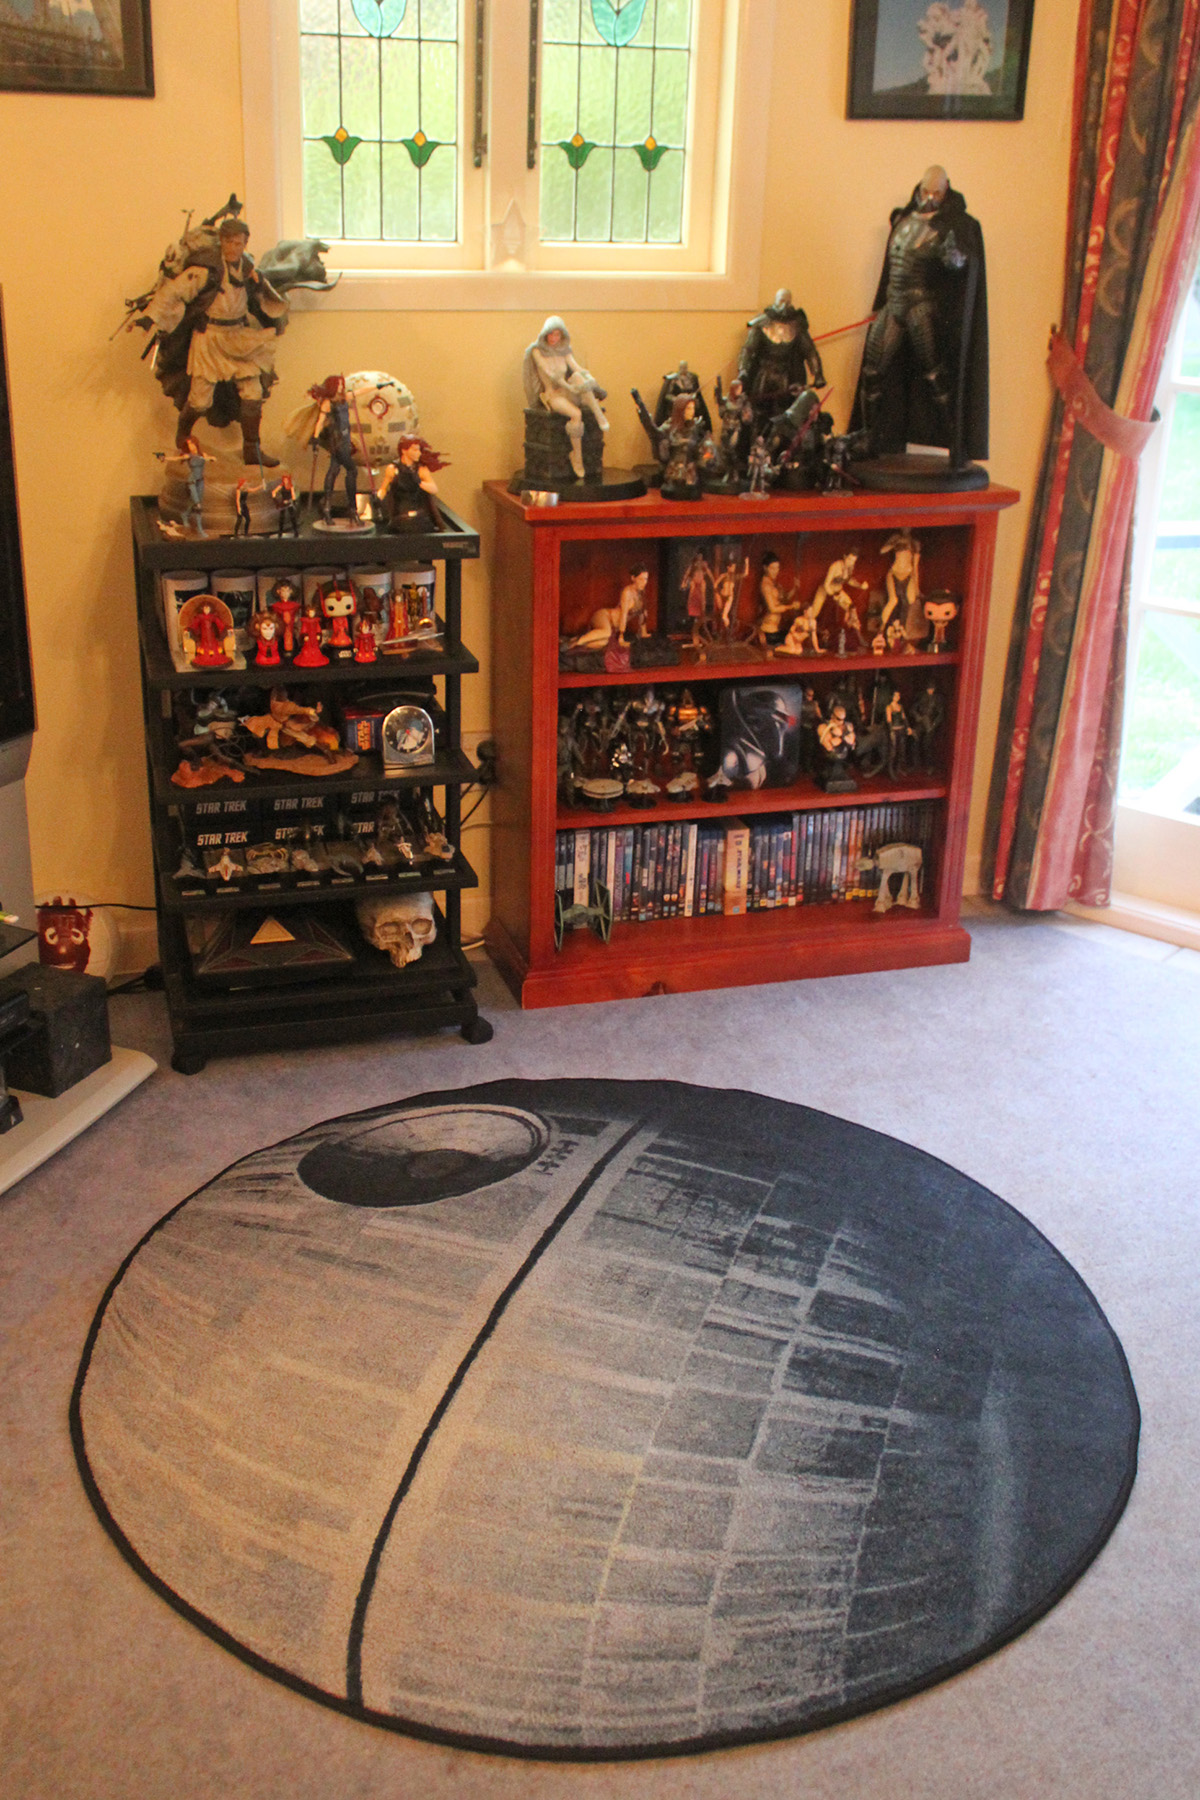 Death Star rug